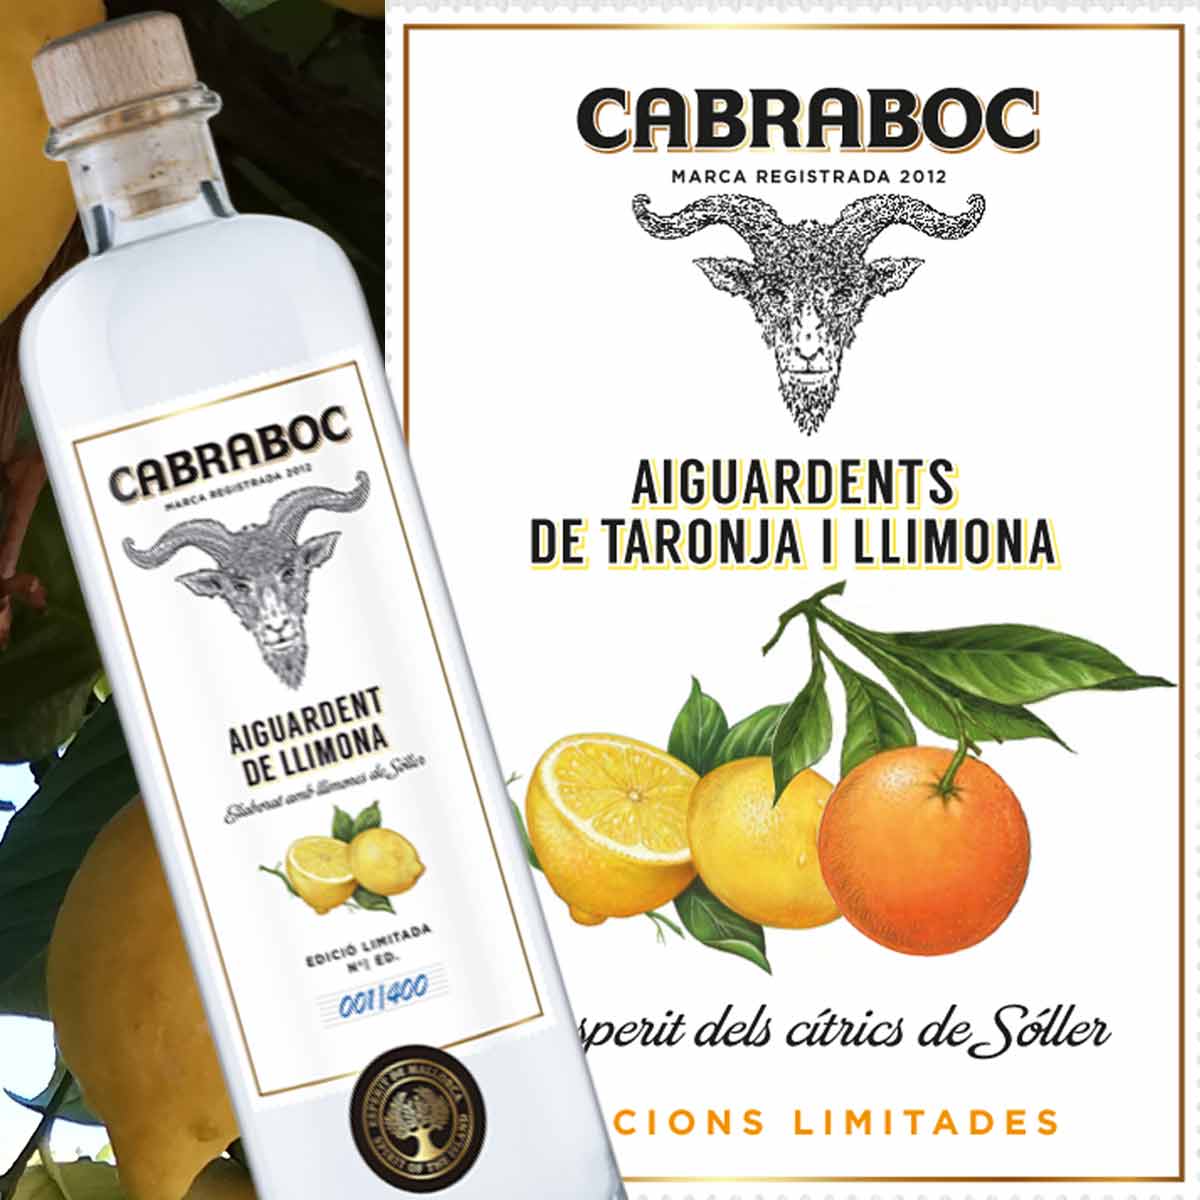 Cabraboc Lemon Spirit